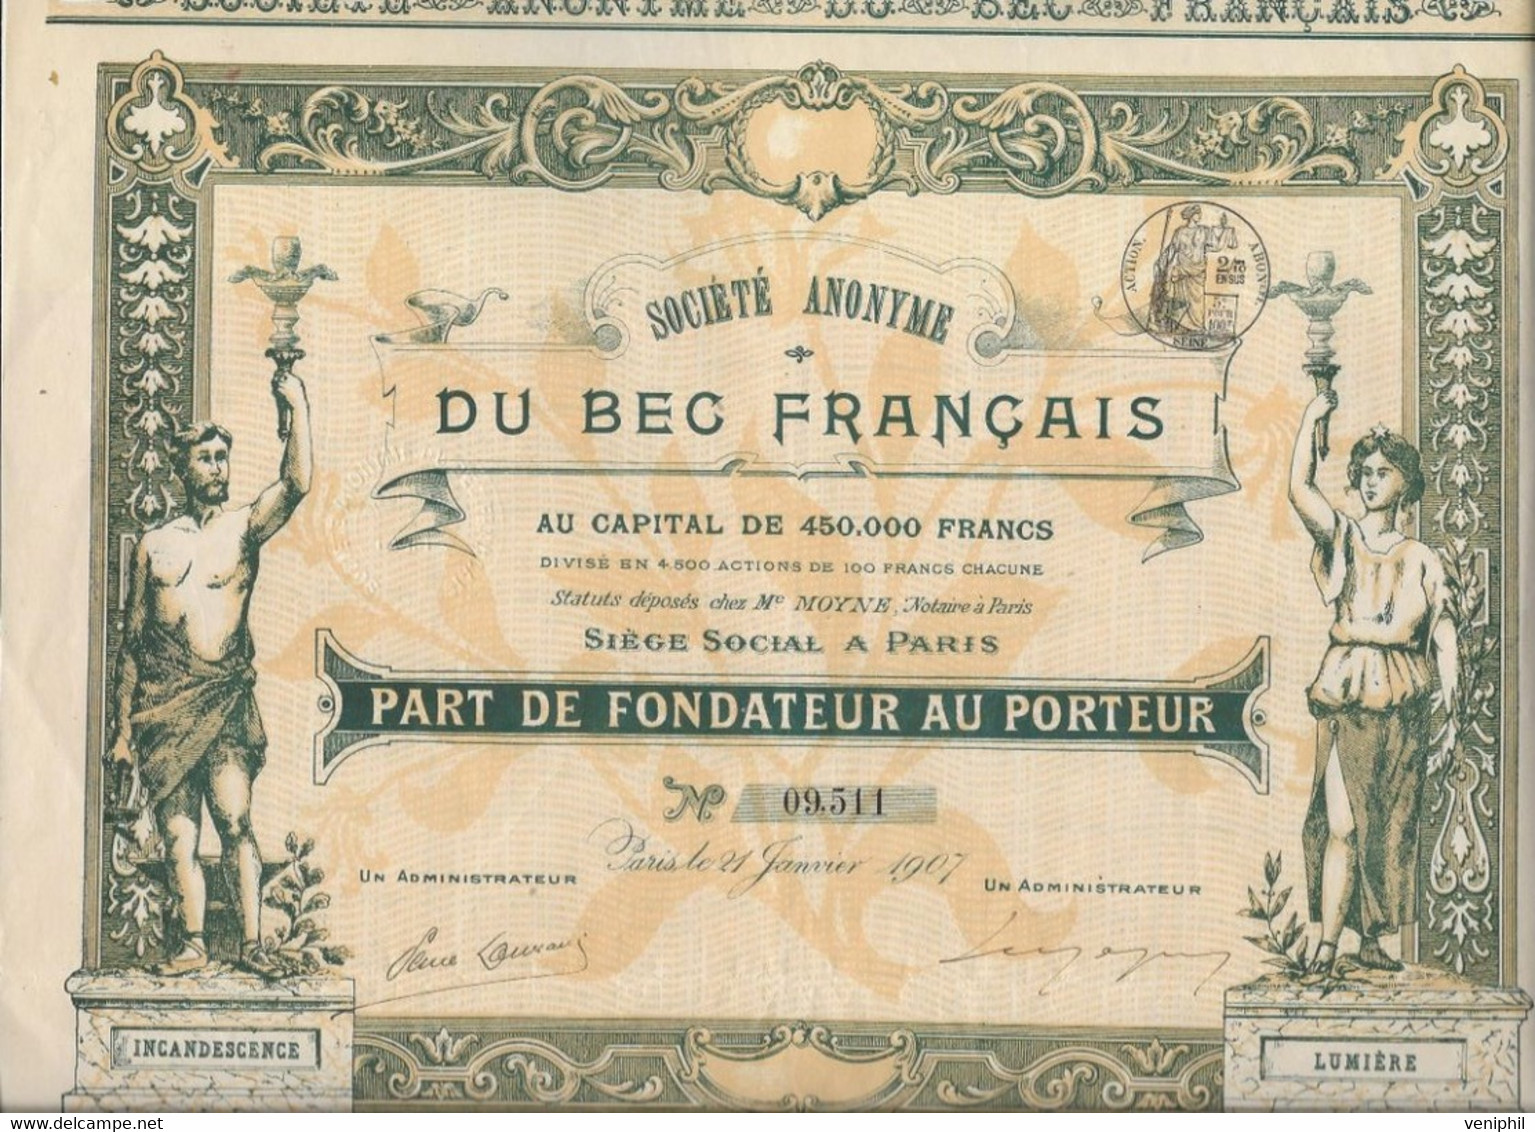 SOCIETE DU BEC FRANCAIS -PART DE FONDATEUR -BELLE ILLUSTRATION - ANNEE 1907 - Elektriciteit En Gas